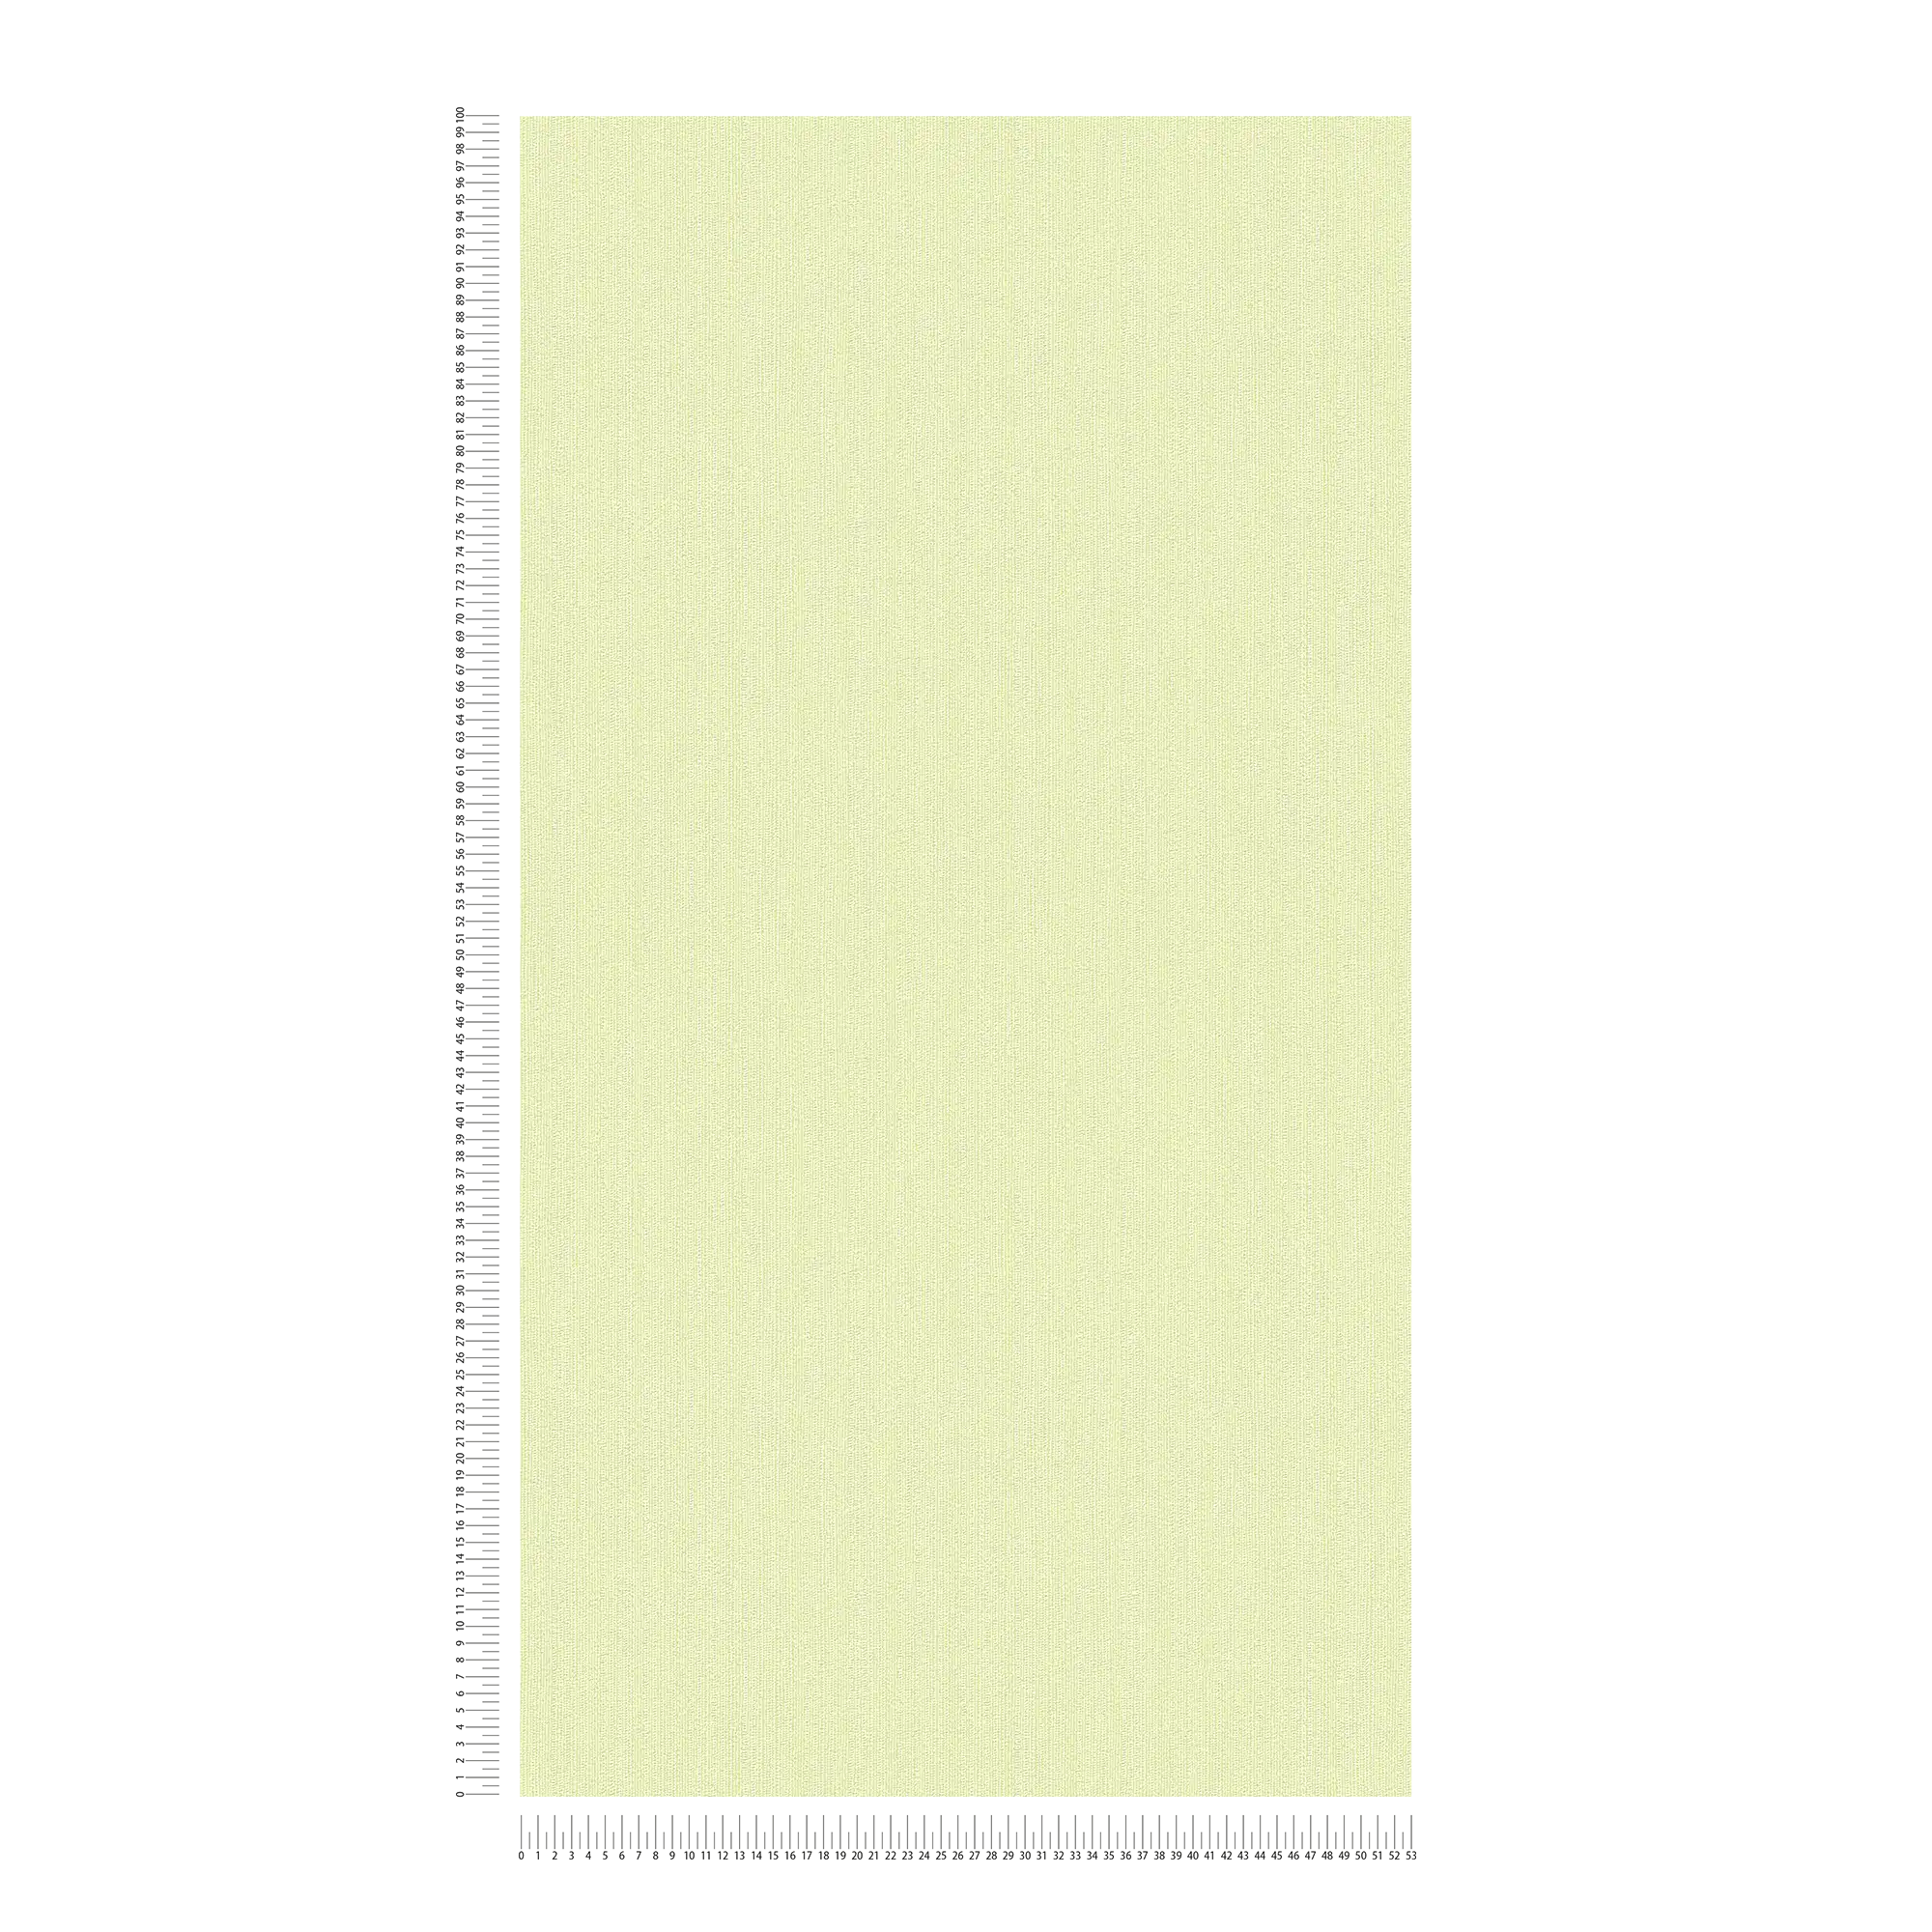             Groen vliesbehang met een subtiel structuurpatroon
        